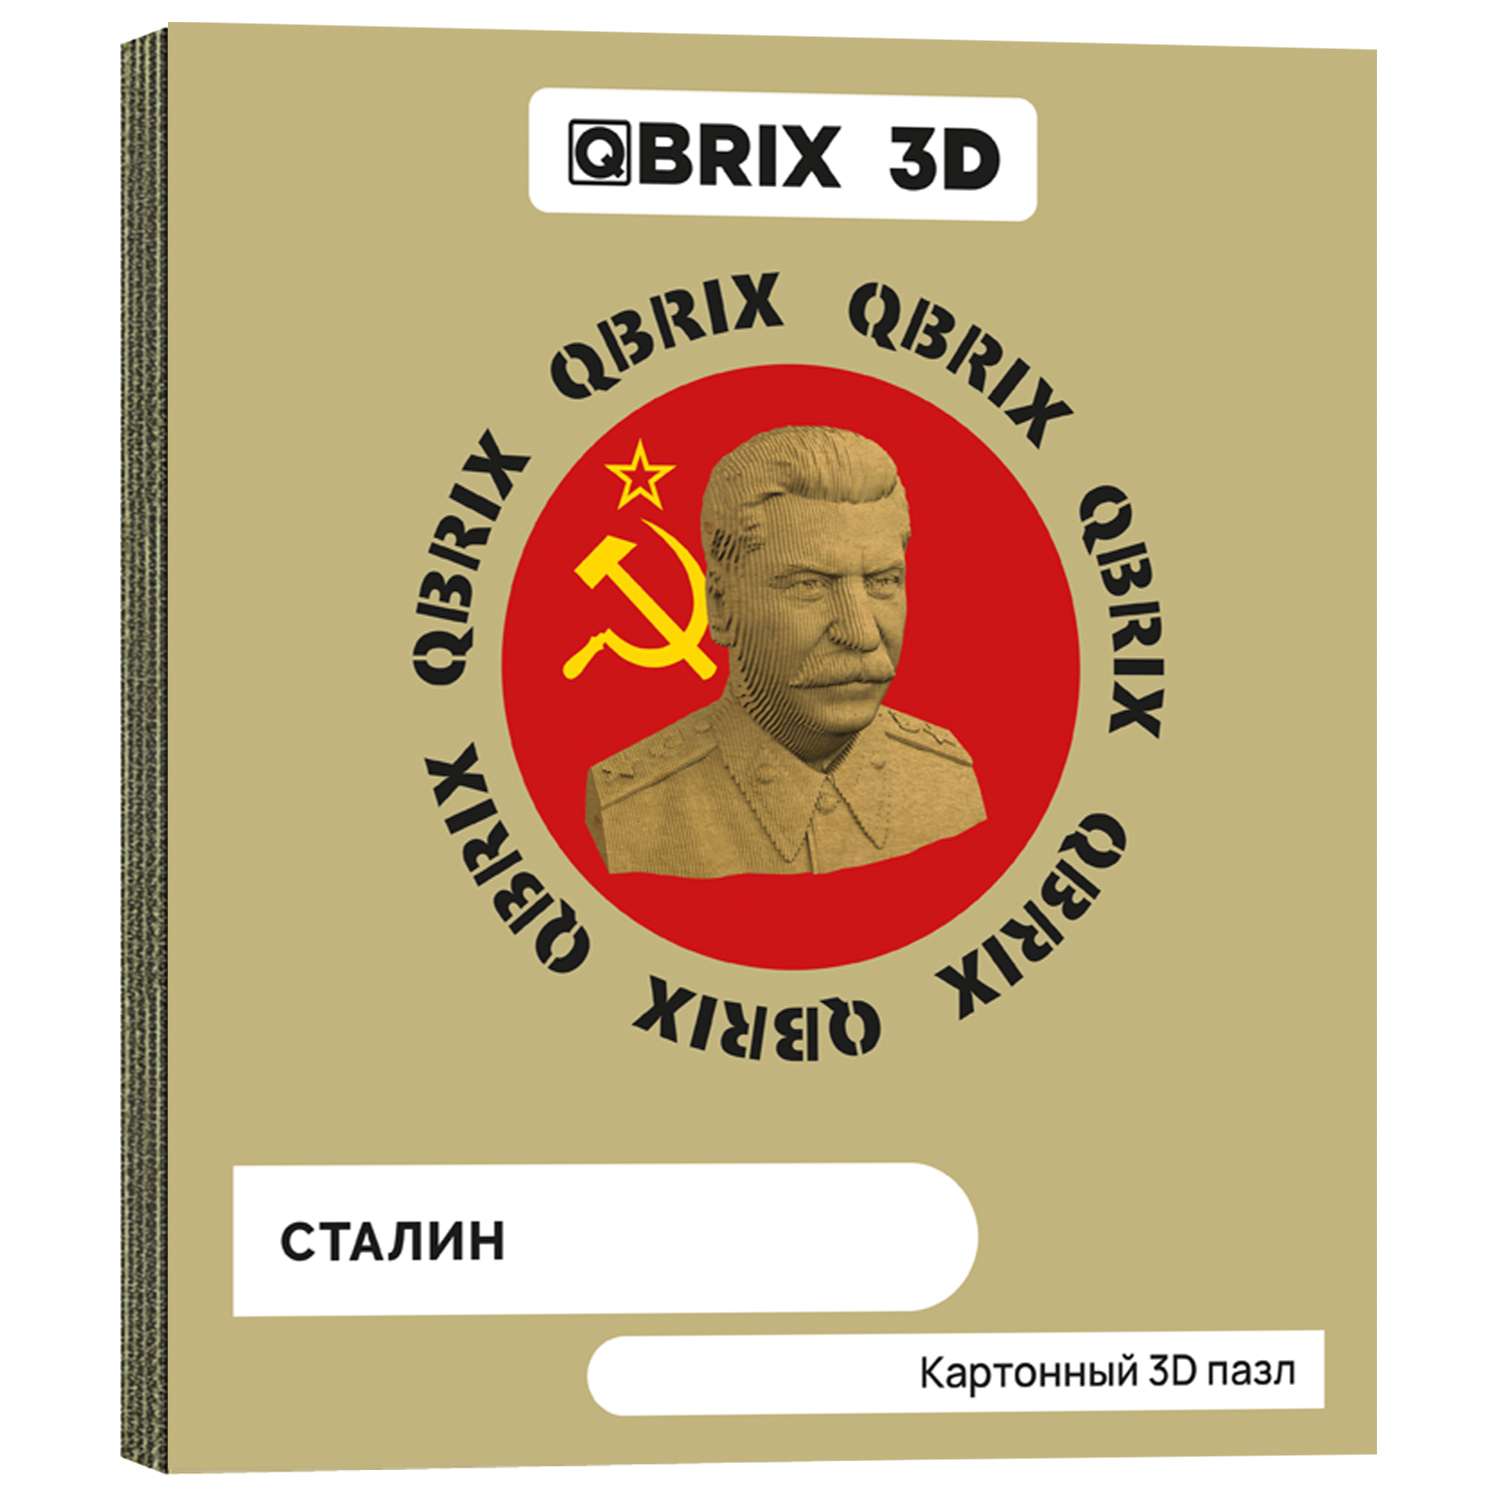 Конструктор QBRIX 3D картонный Сталин 20033 20033 - фото 1